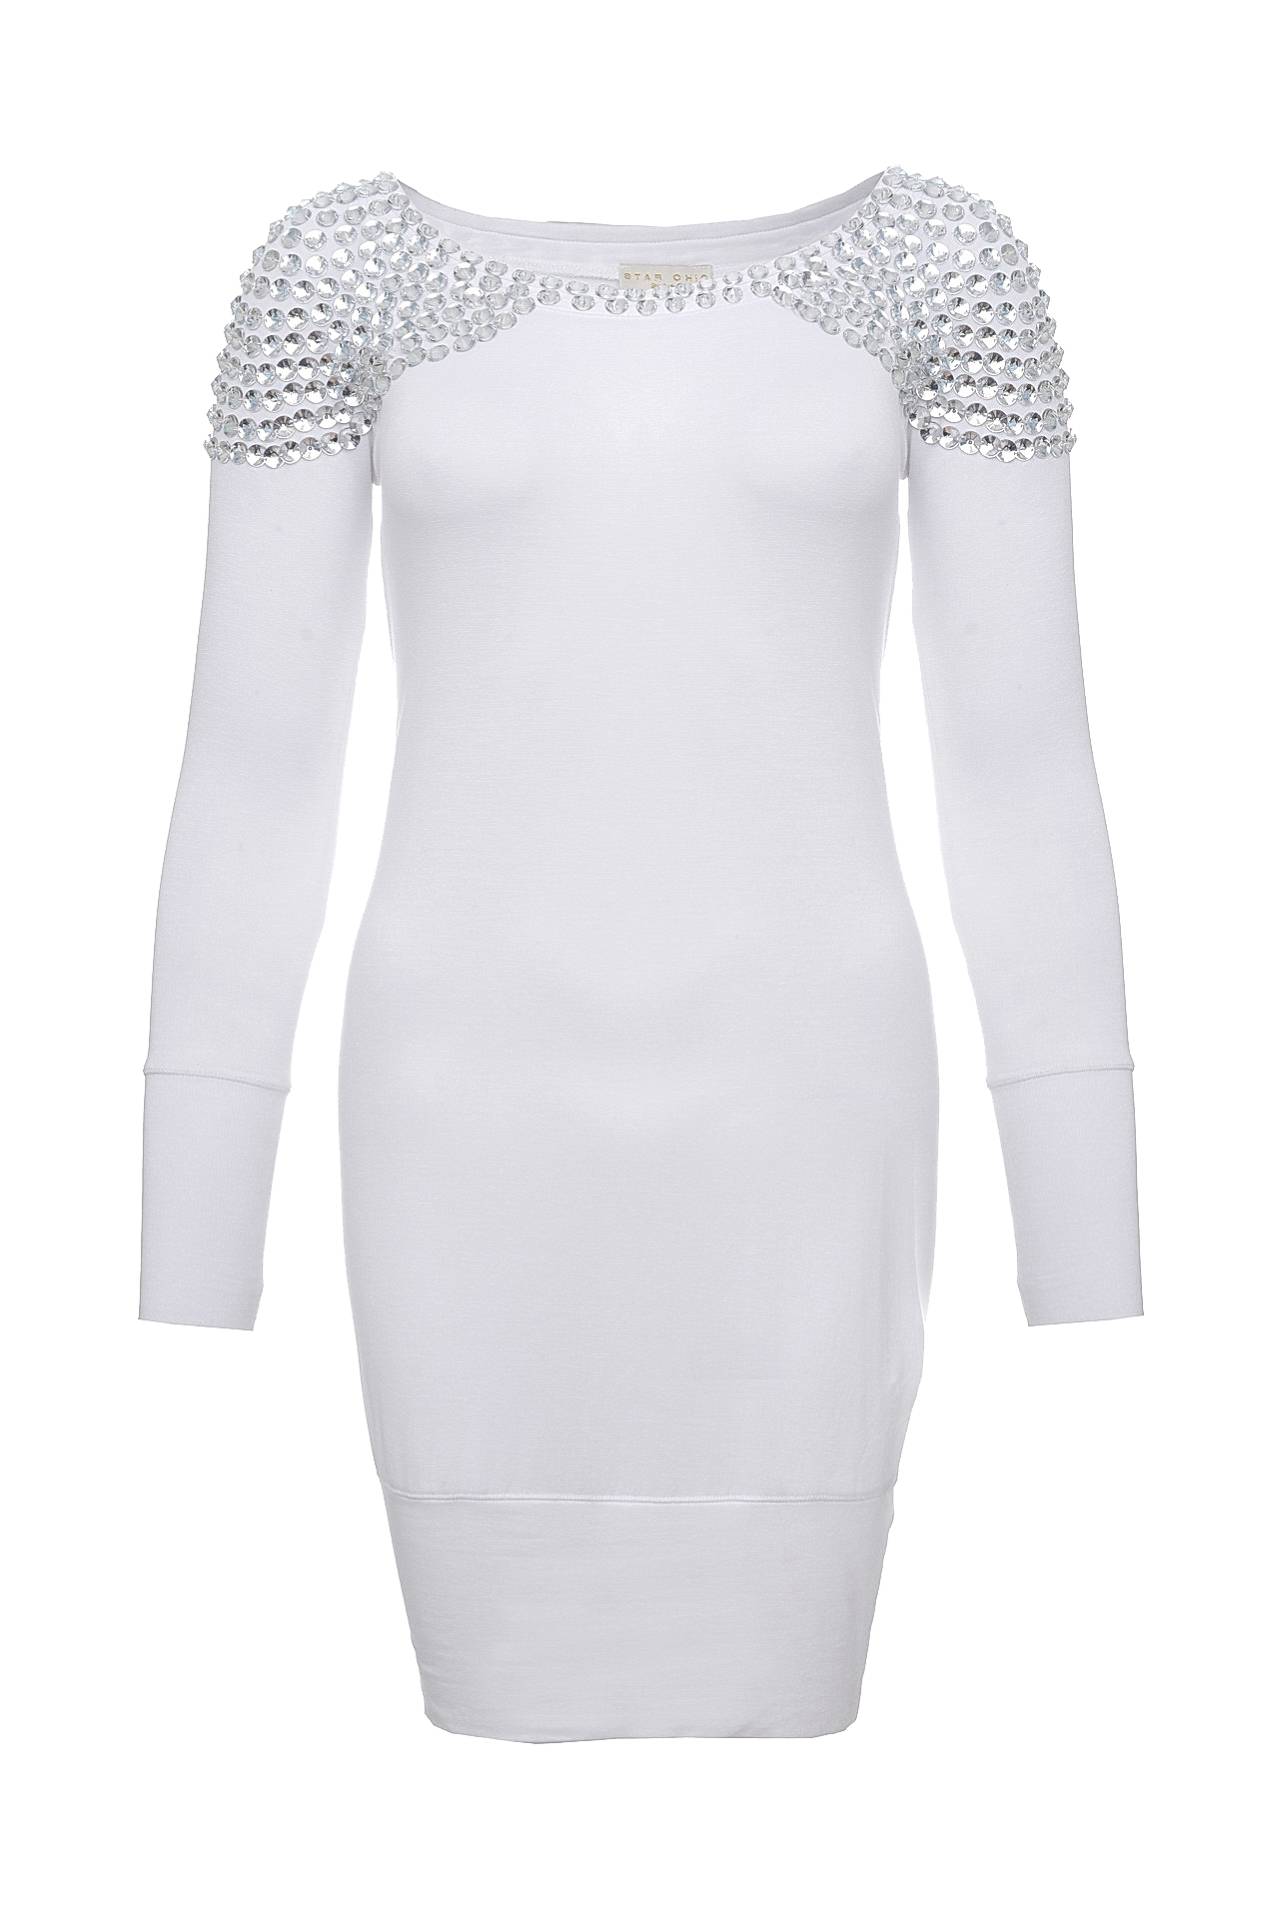 Одежда женская Платье STAR CHIC (SC240/11.1). Купить за 7960 руб.